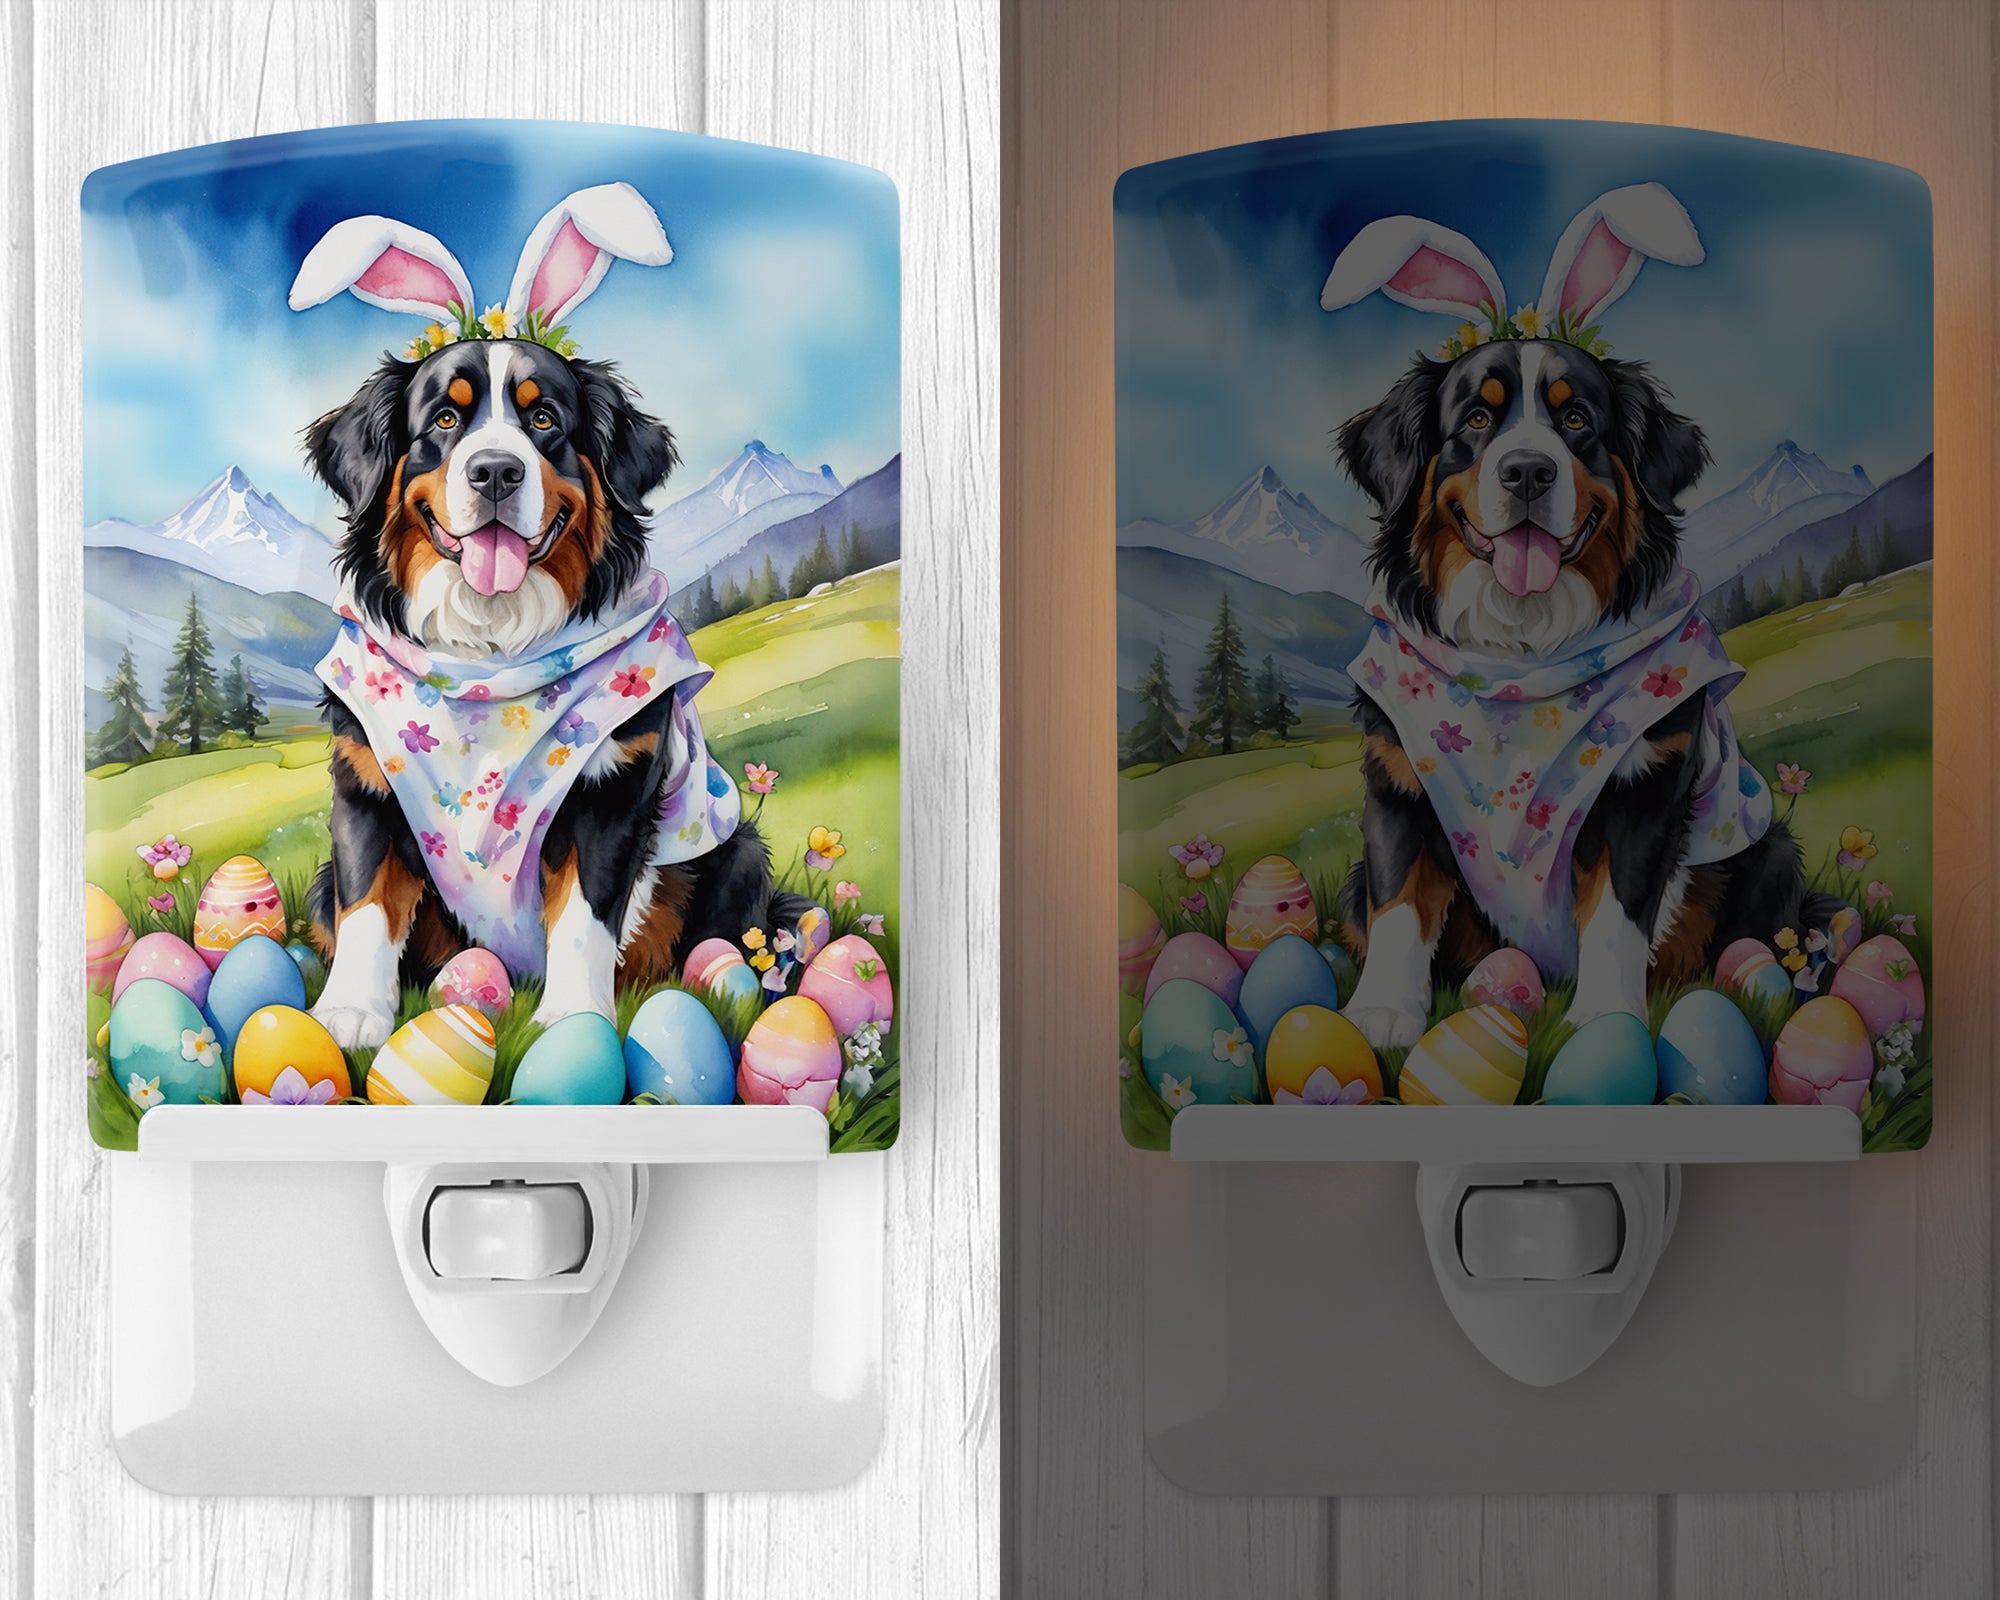 Buy this Bernese Mountain Dog Easter Egg Hunt Ceramic Night Light